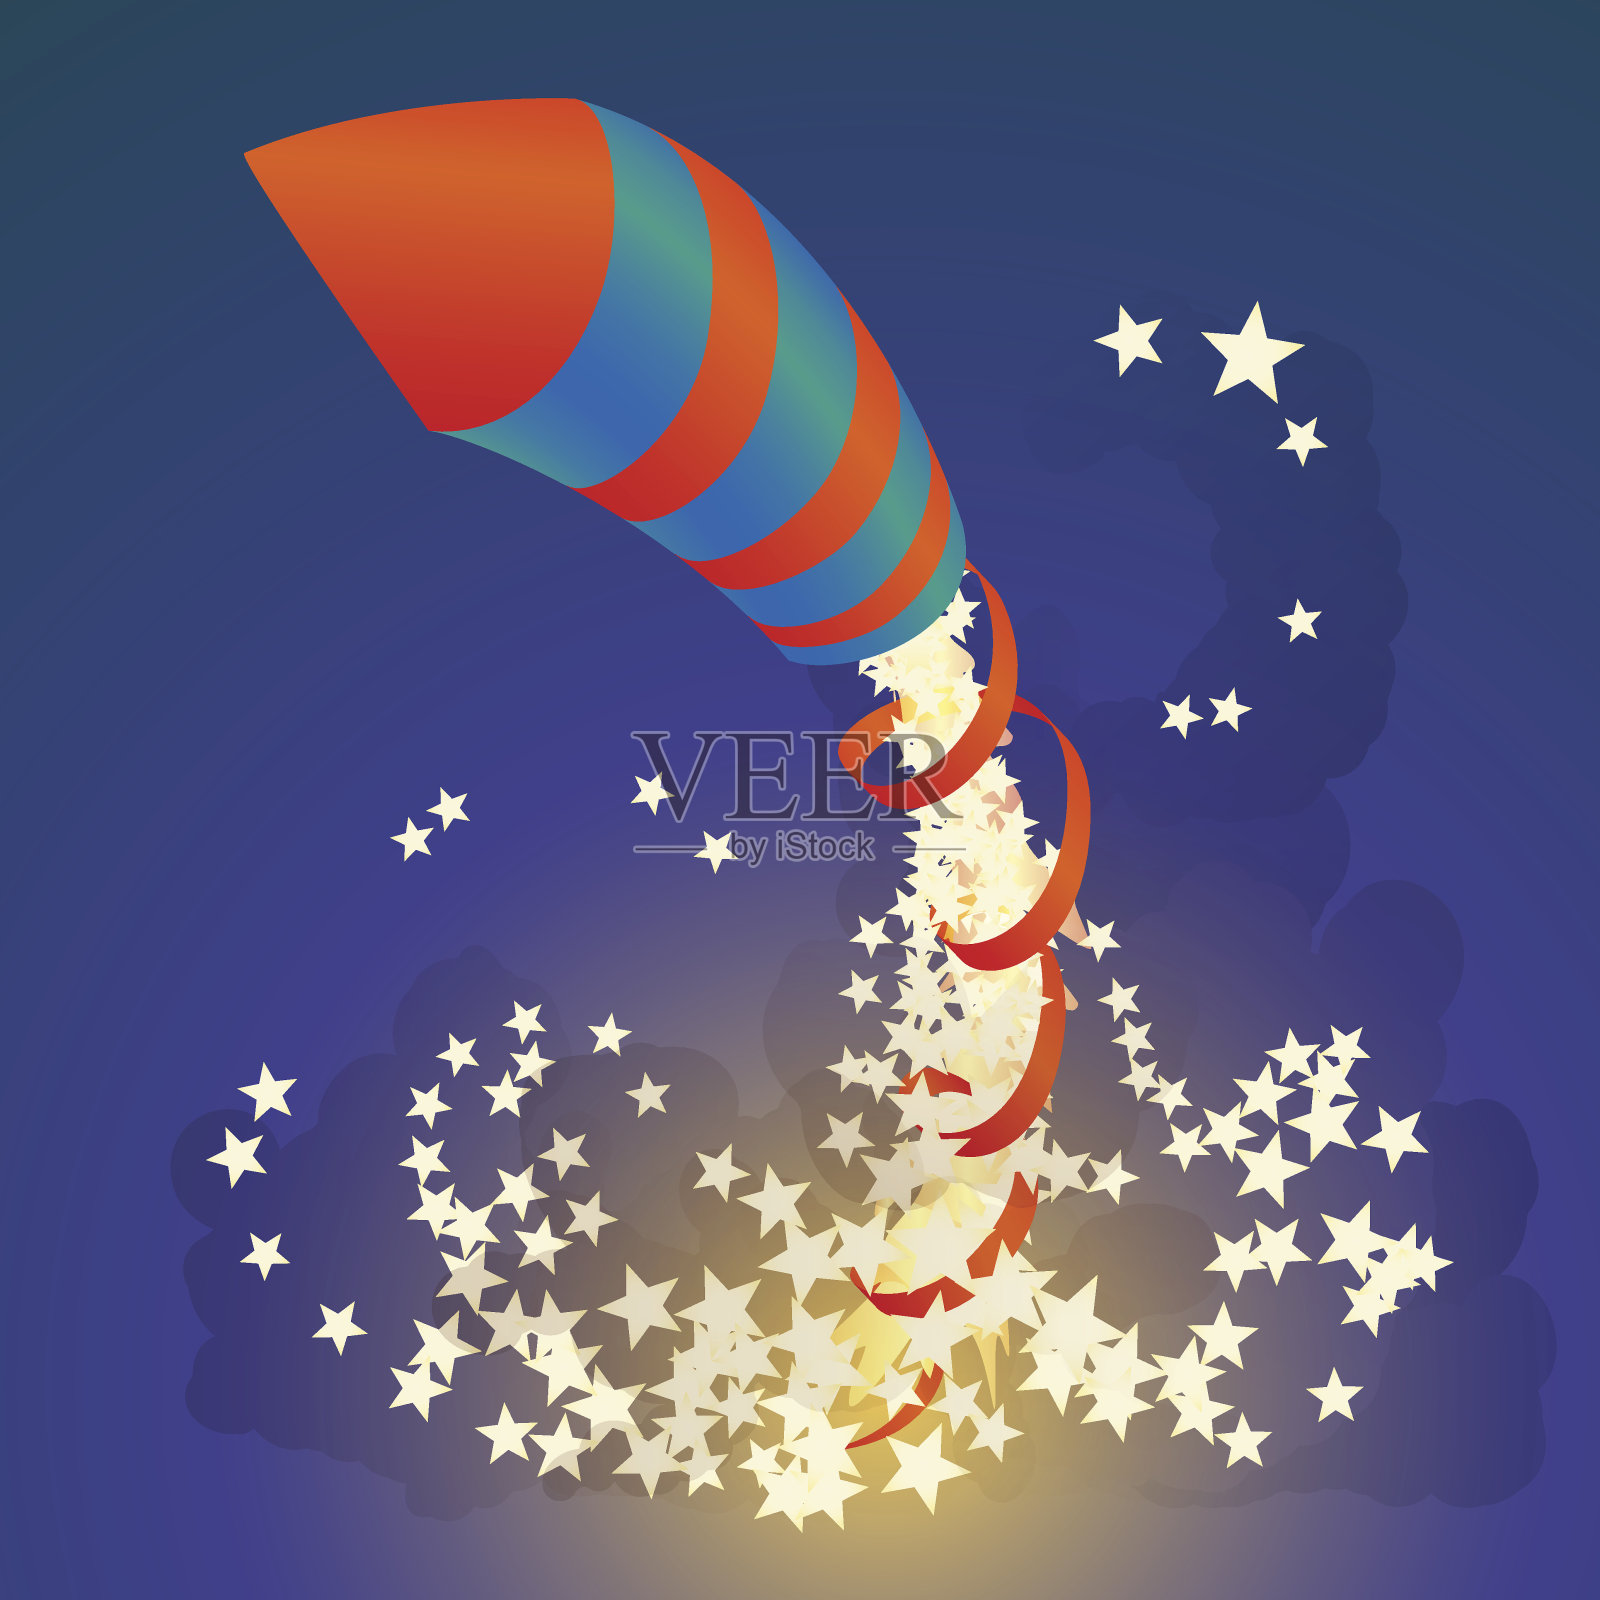 烟花火箭在夜空中飞翔插画图片素材